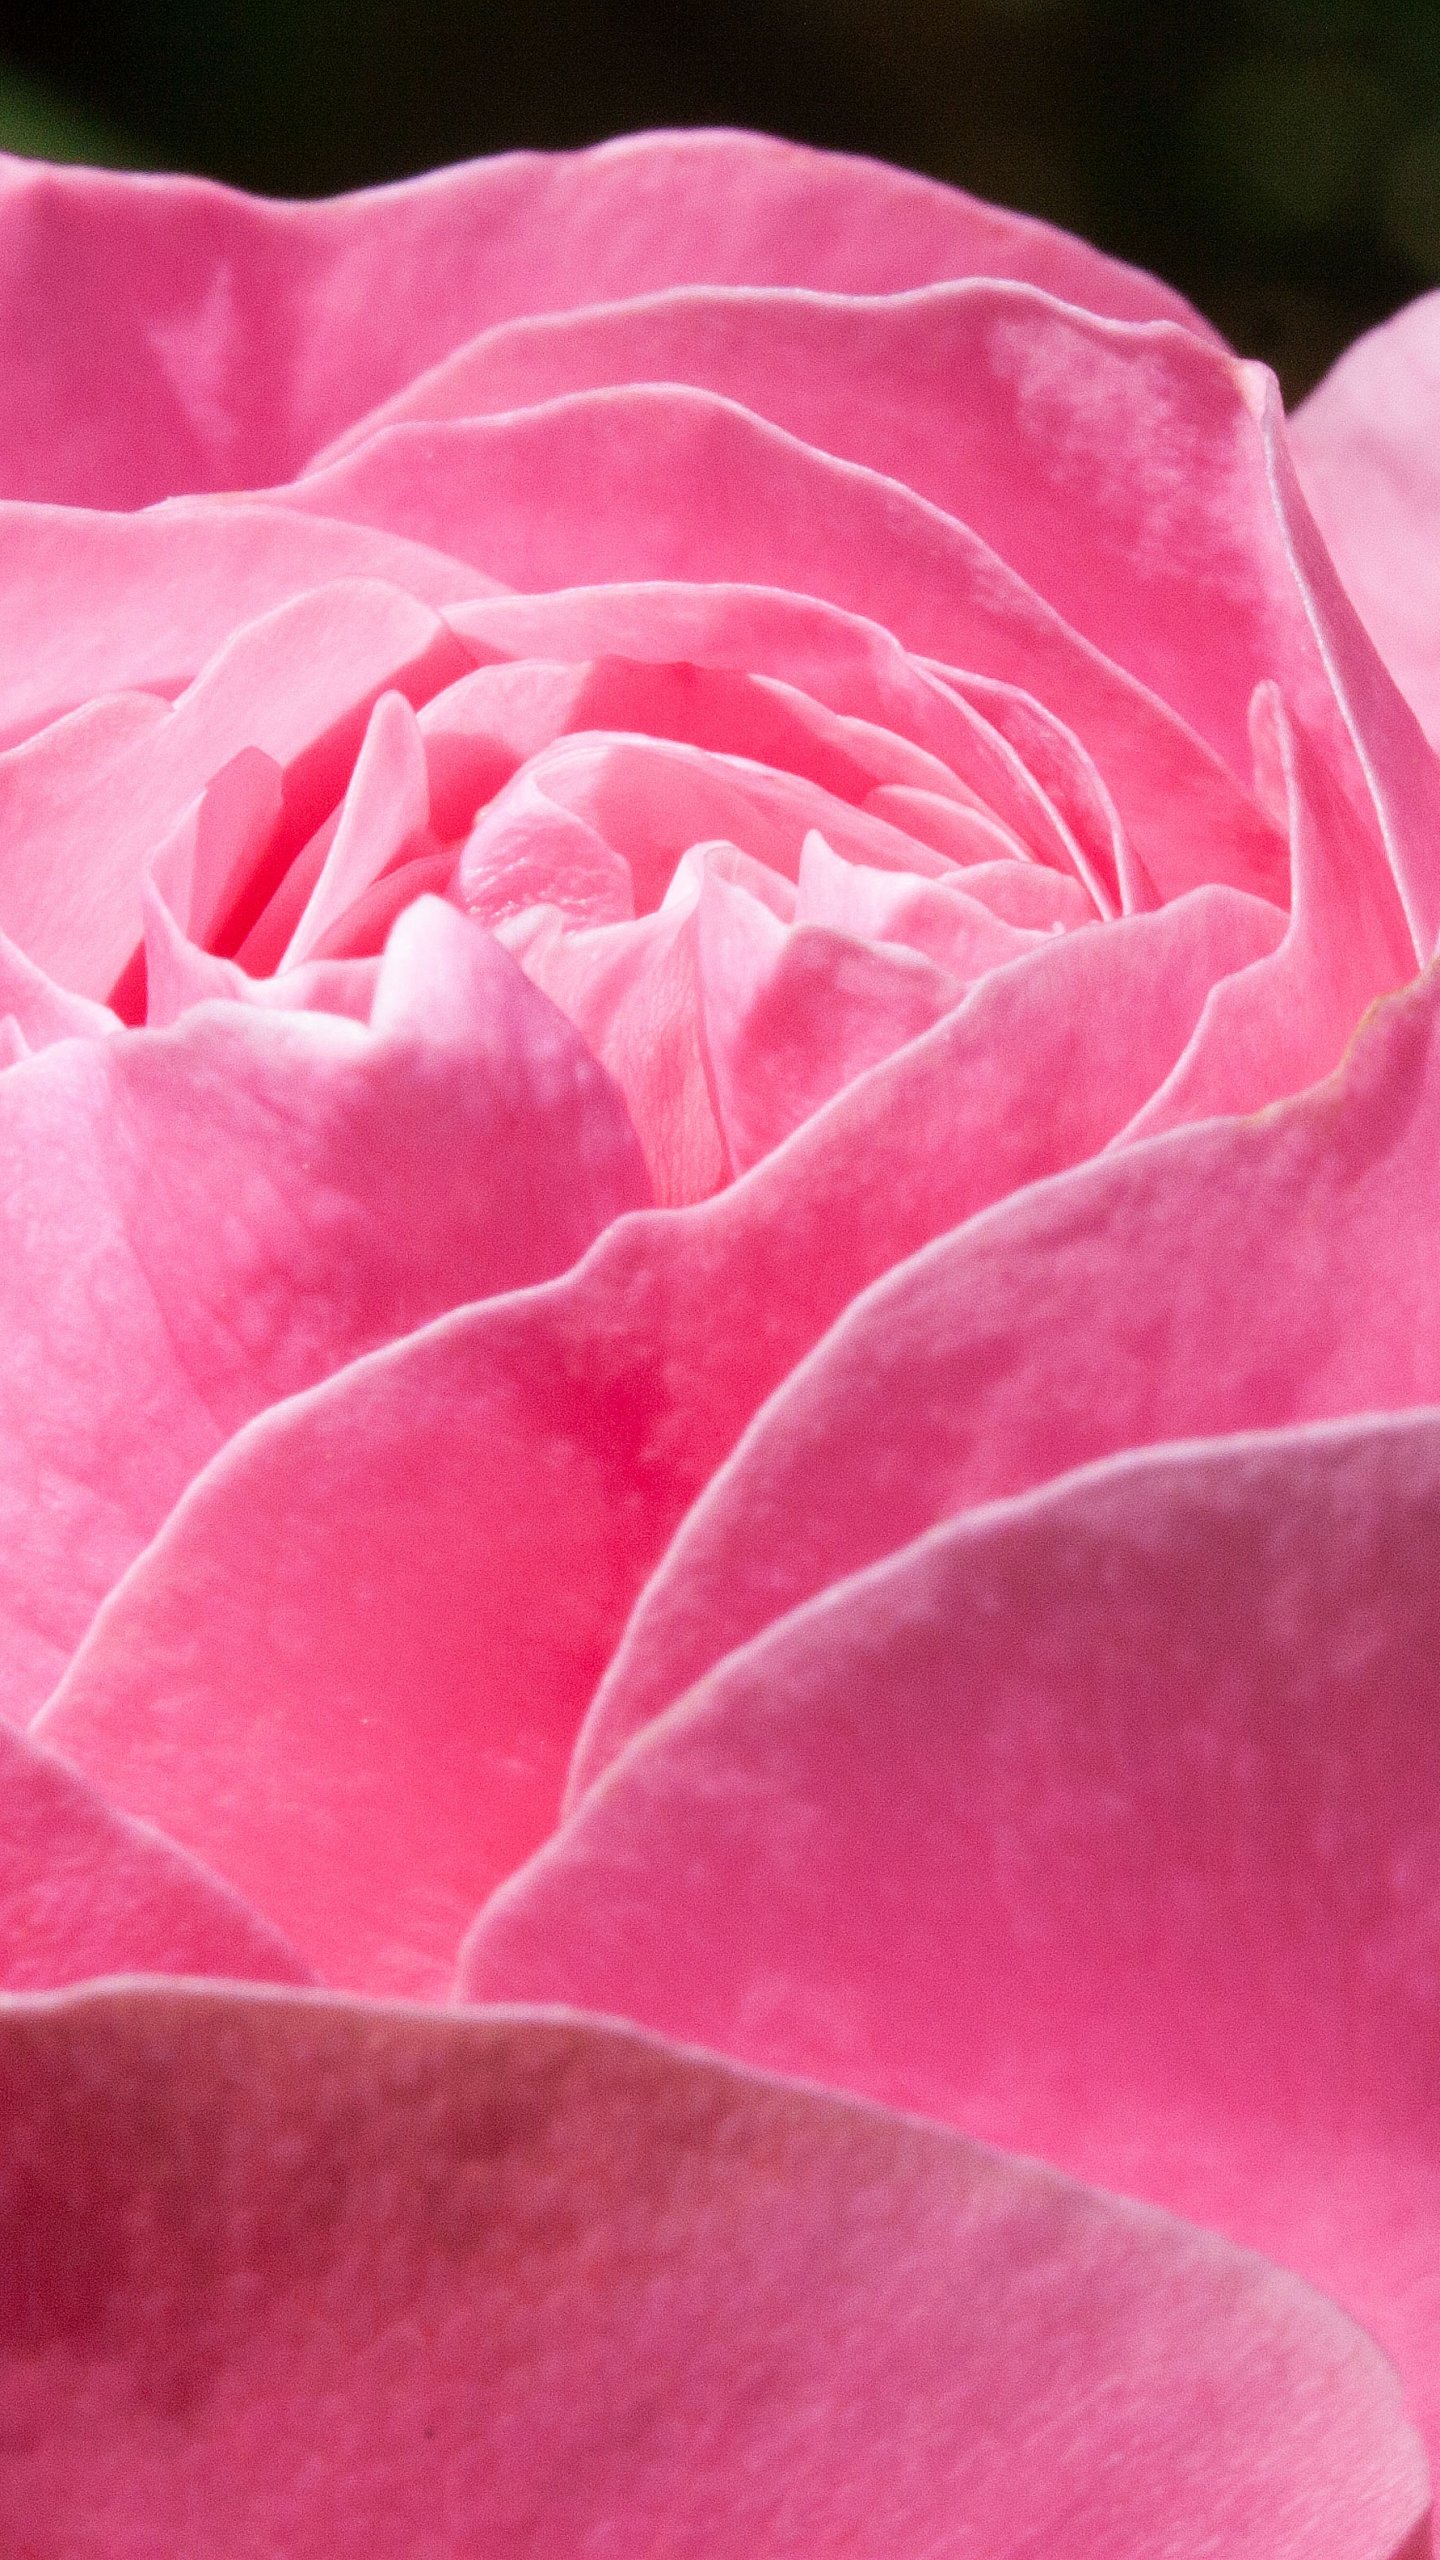 Pink Rose Wallpaper - Mobile & Desktop Background